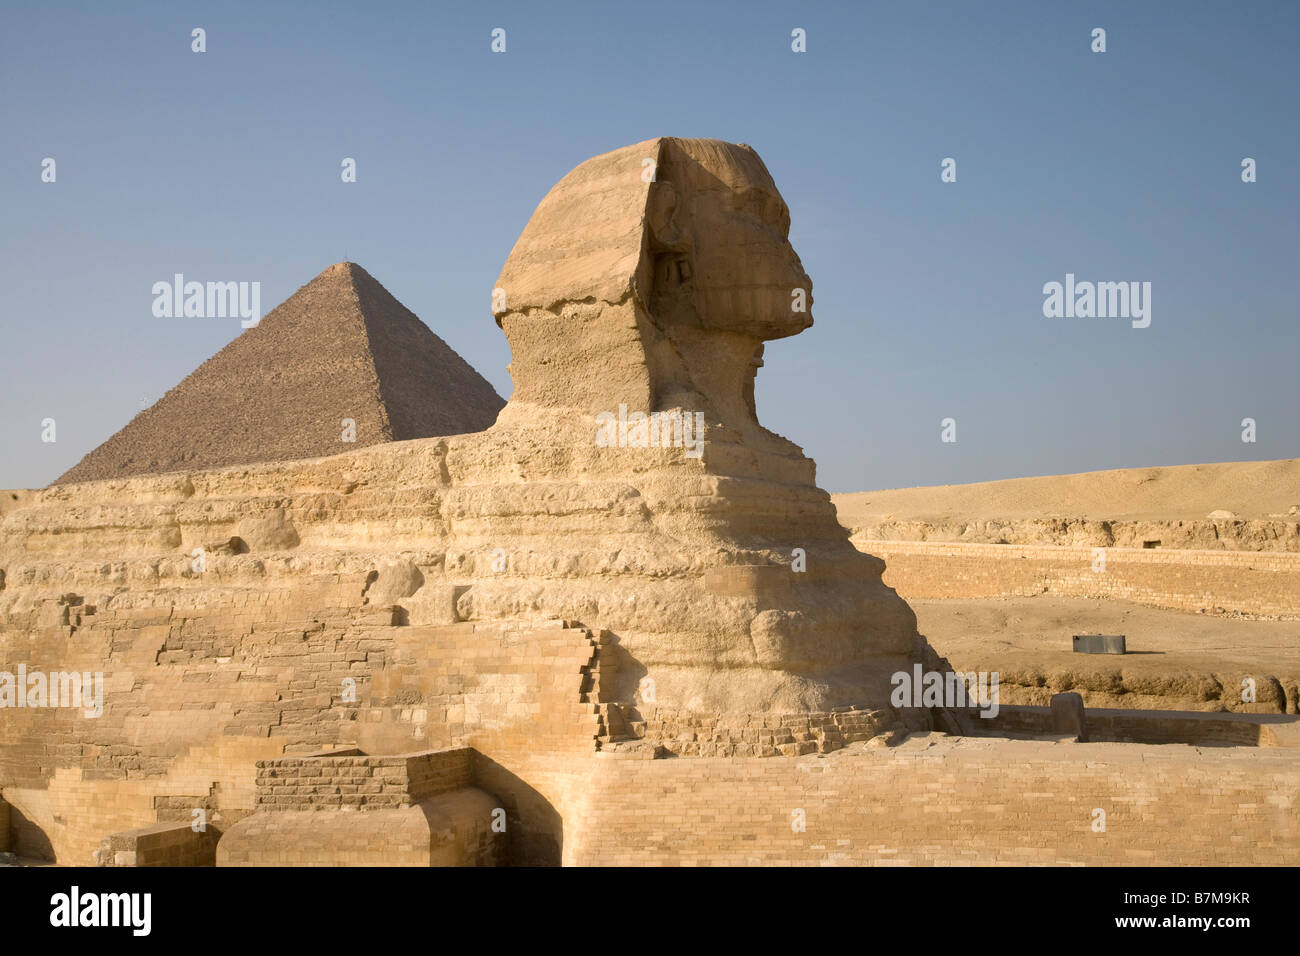 Pyramids, Giza, Egypte, sable, Désert, Sex, Vacances, Voyage, Sphinx, civilisation ancienne, l'archéologie, spirituel, mystique Banque D'Images